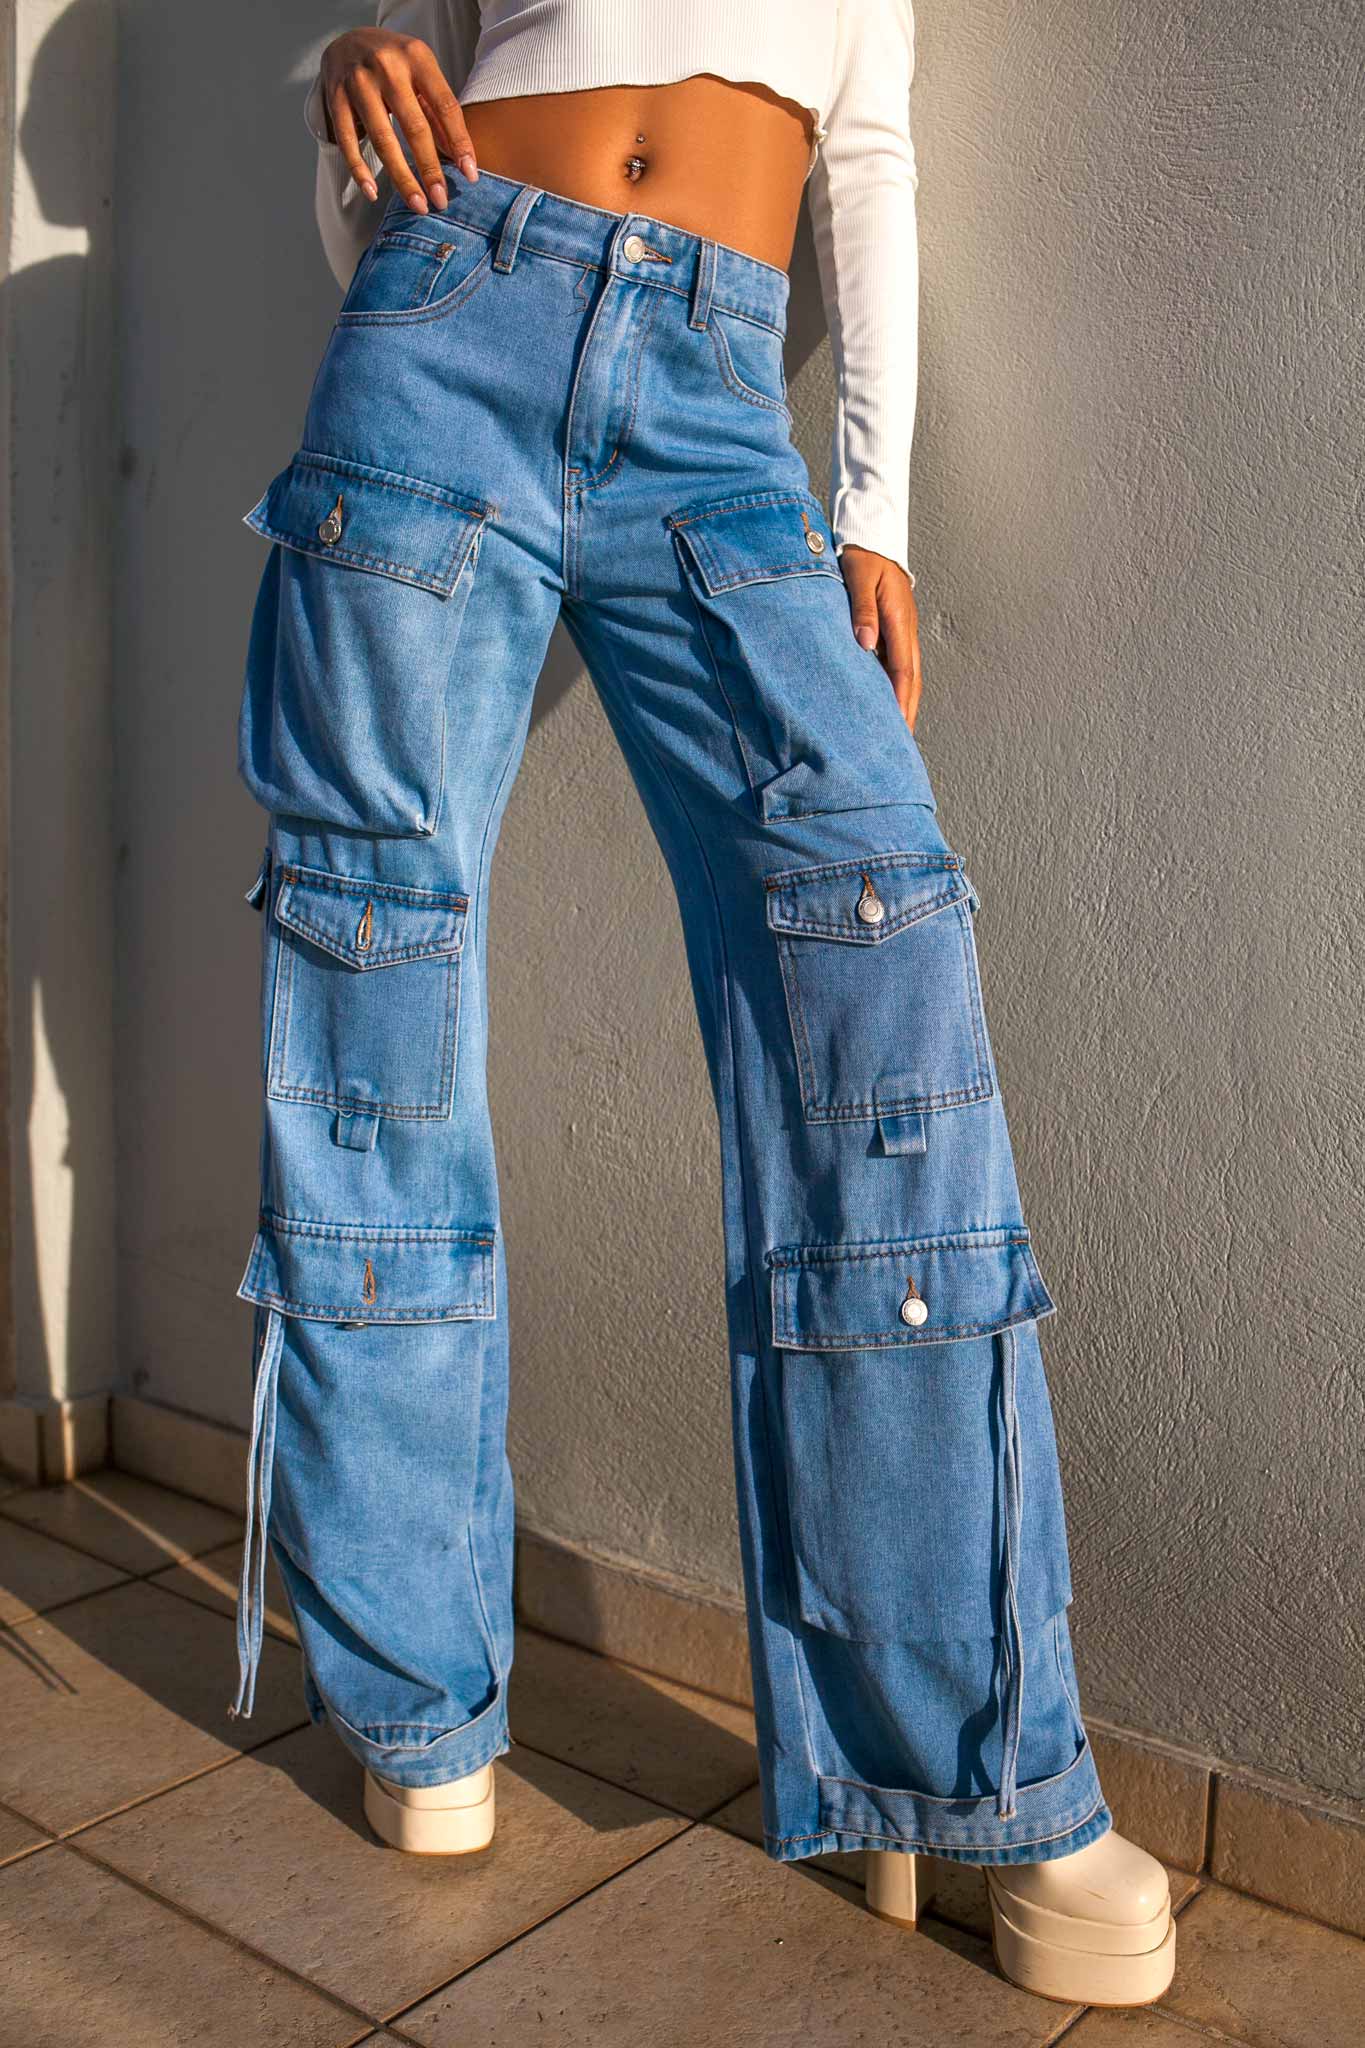 ΤΖΙΝ ΠΑΝΤΕΛΟΝΙΑ Ivory τζιν παντελόνι με τσέπες cargo μπλε